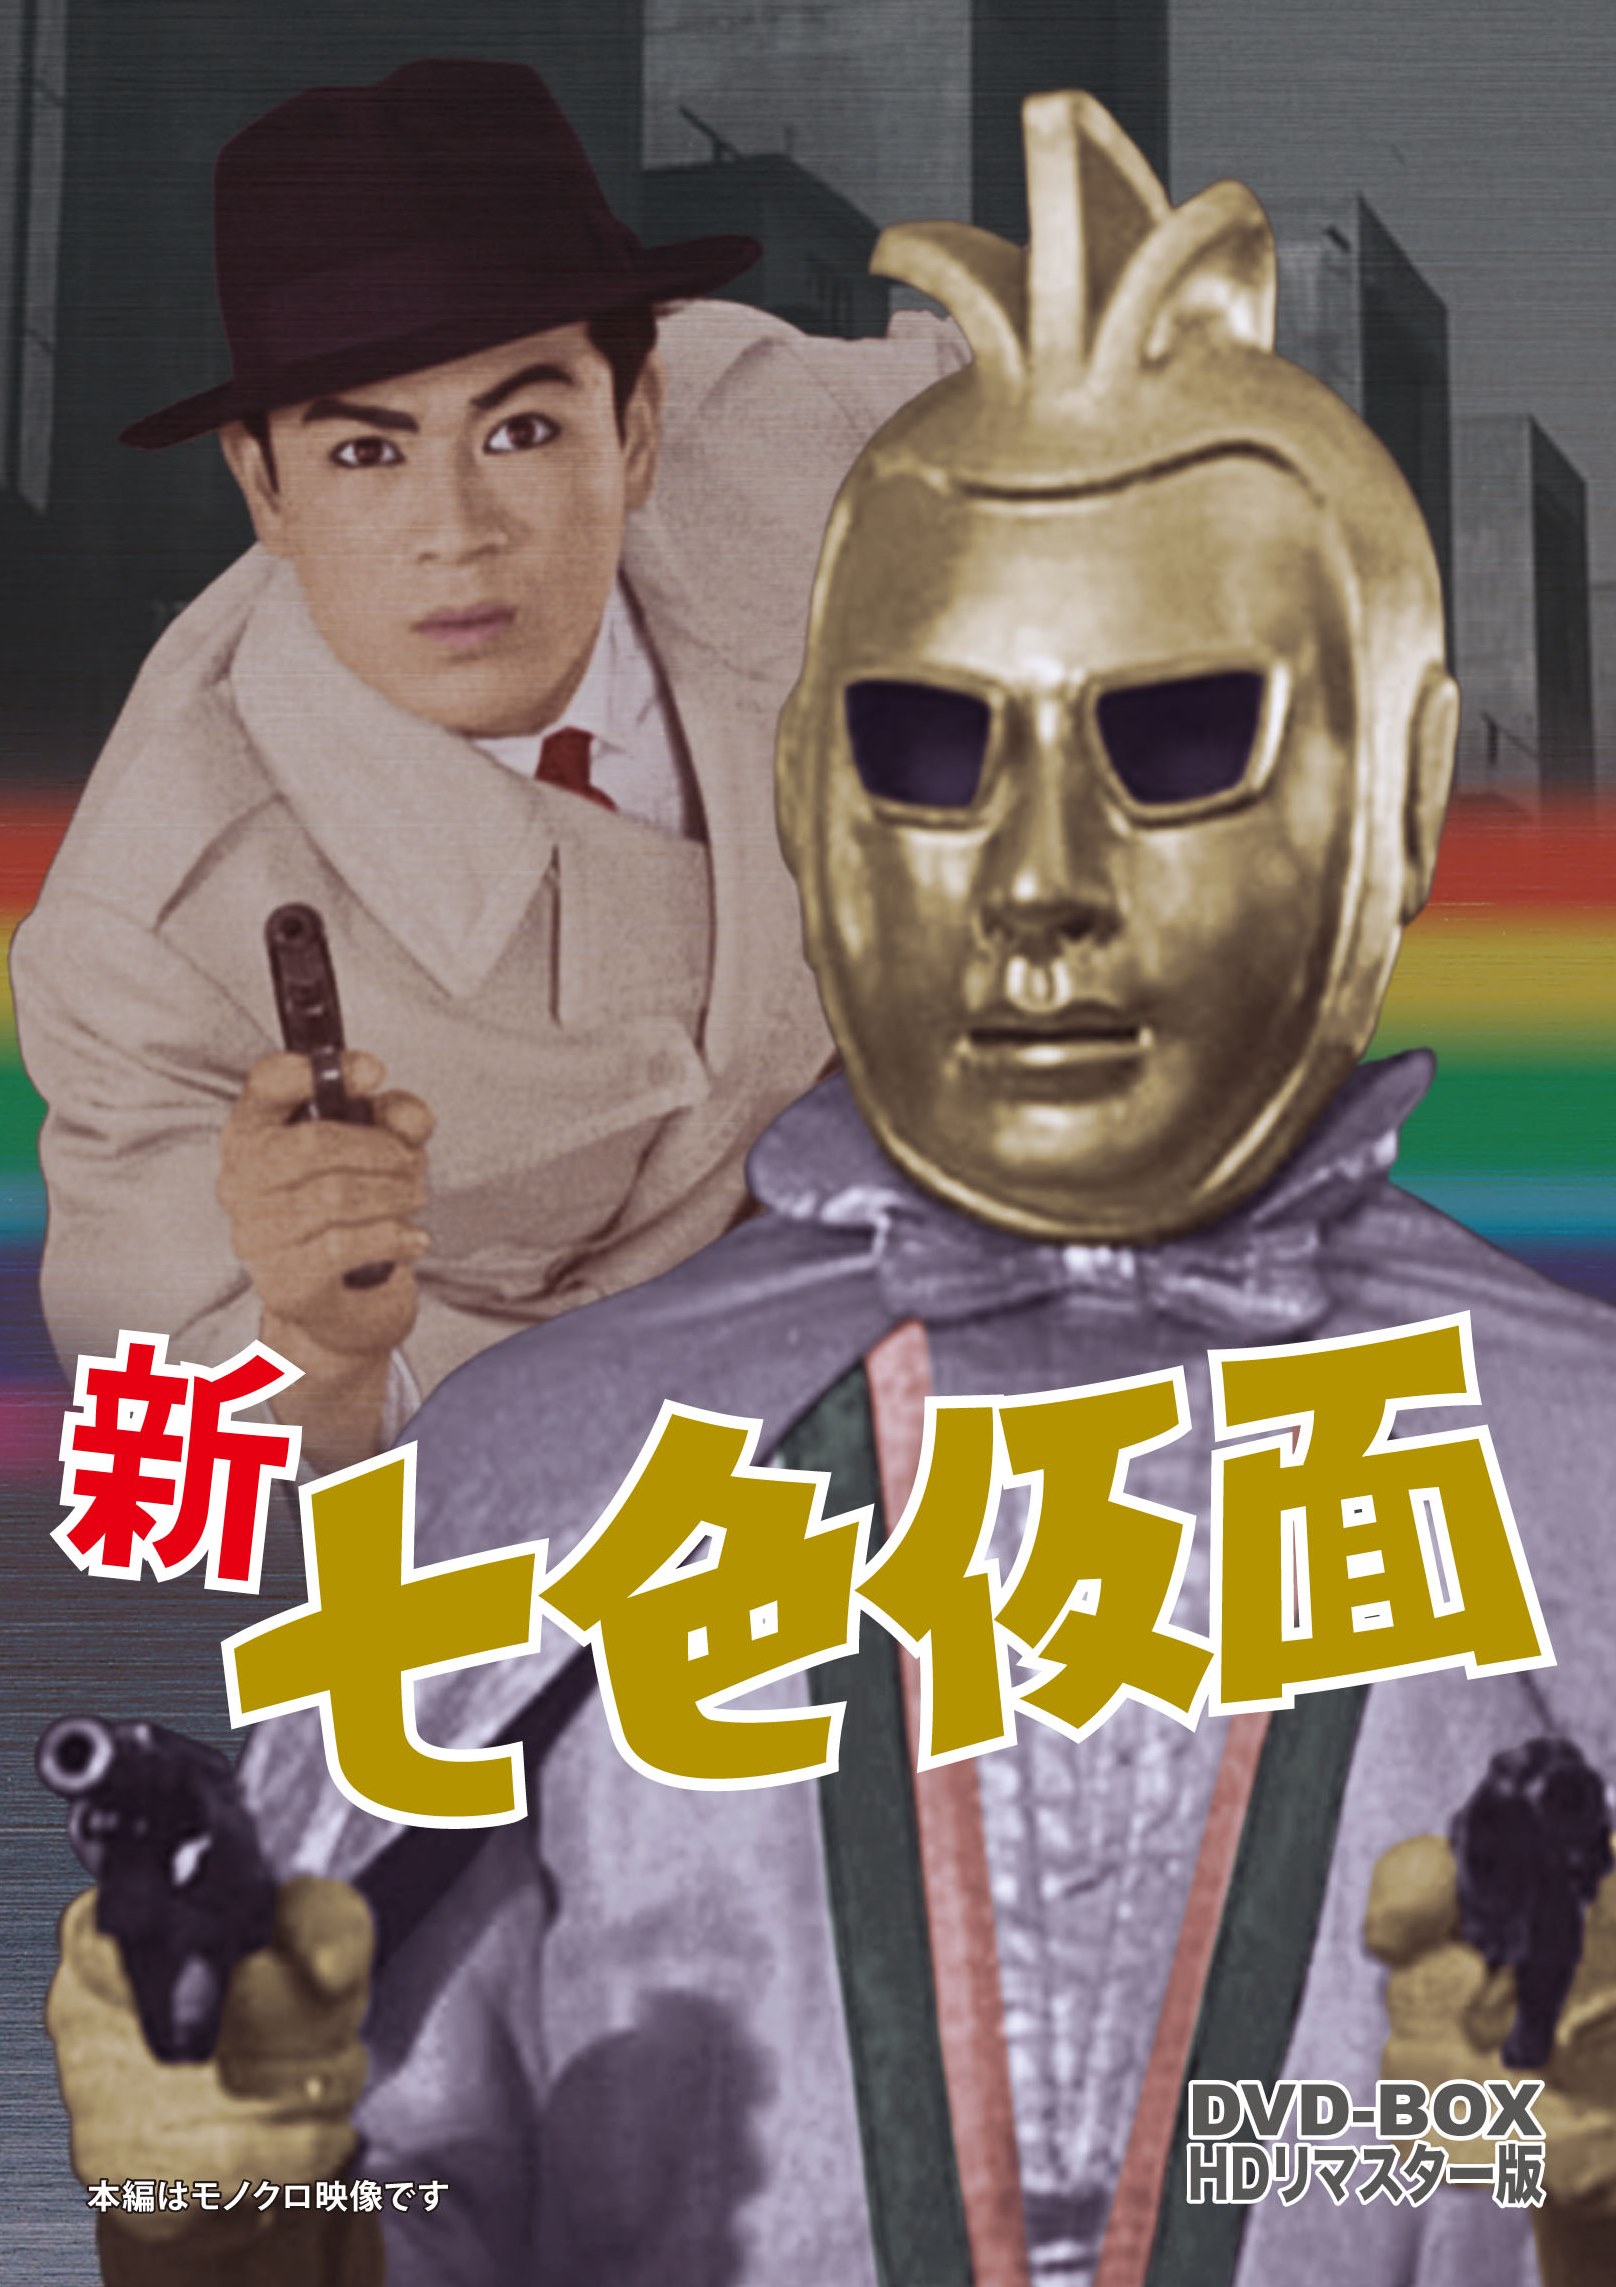 新 七色仮面 DVD-BOX HDリマスター版 | 東映ビデオ オンラインショップ 